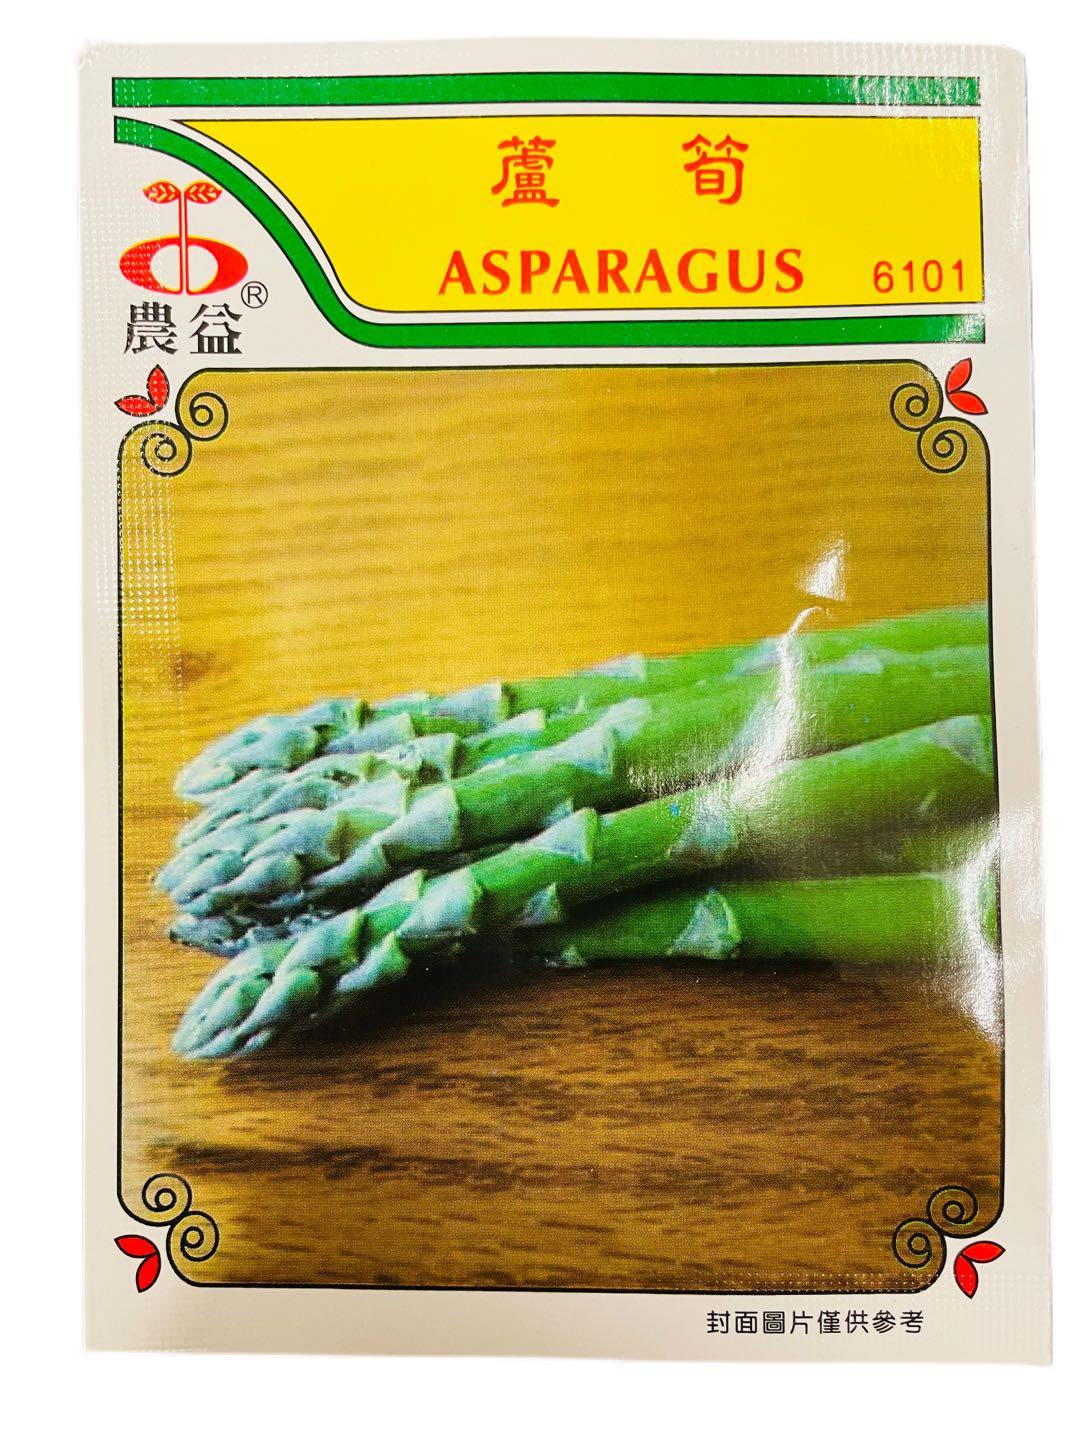 ASPARAGUS (ASPARAGUS OFFICINALIS) - Premium Co  Groceries 